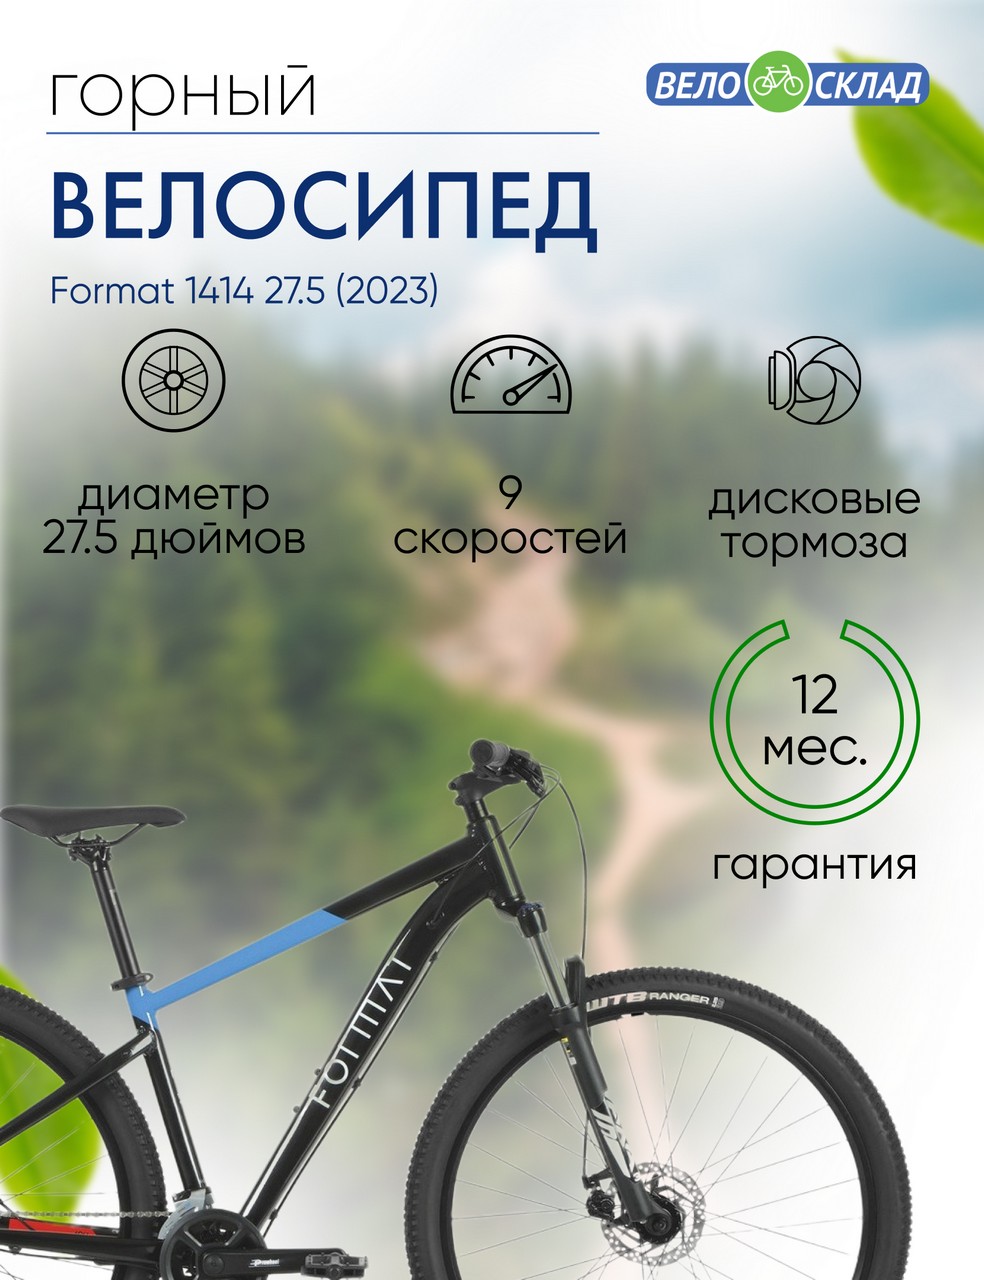 Горный велосипед Format 1414 27.5, год 2023, цвет Черный-Синий, ростовка 17